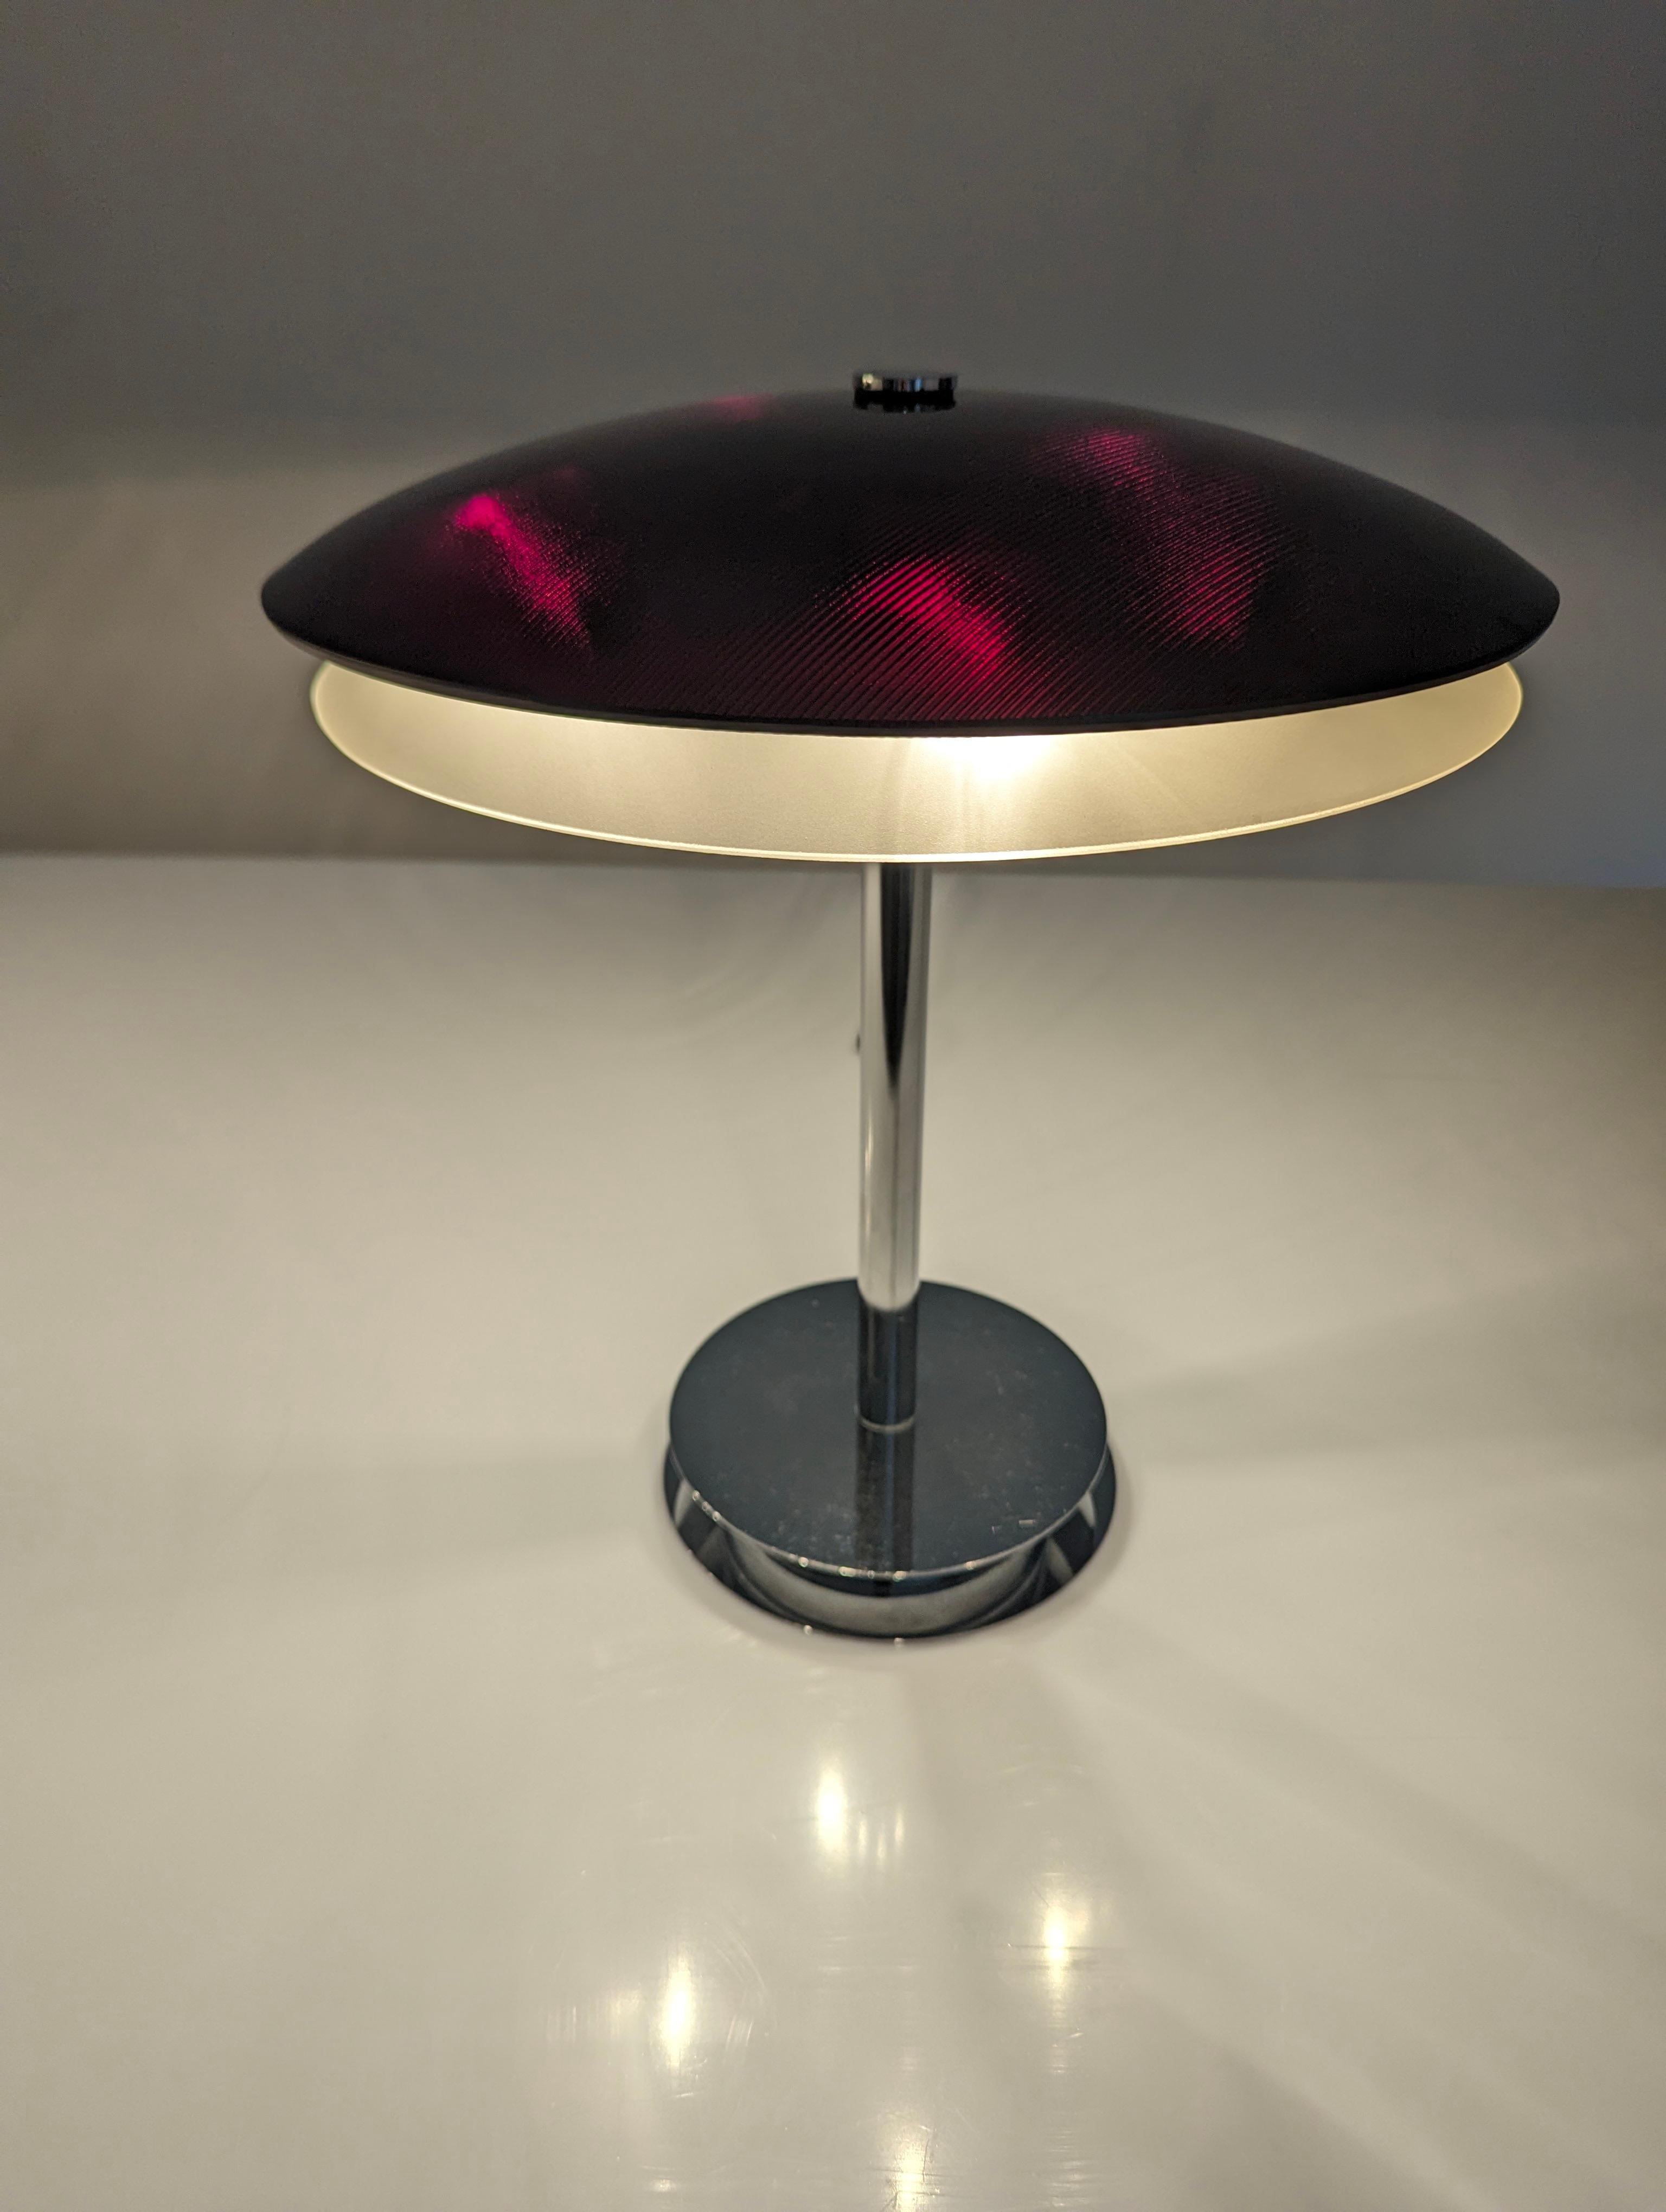 Elegante Tischleuchte, entworfen von Fontana Arte im Jahr 1954. Bromatierter Sockel mit doppeltem gewölbtem Kristalldeckel in Schwarz mit burgunderroten Reflexen, wenn er beleuchtet ist, und einem unteren durchscheinenden Weiß, das ein angenehmes